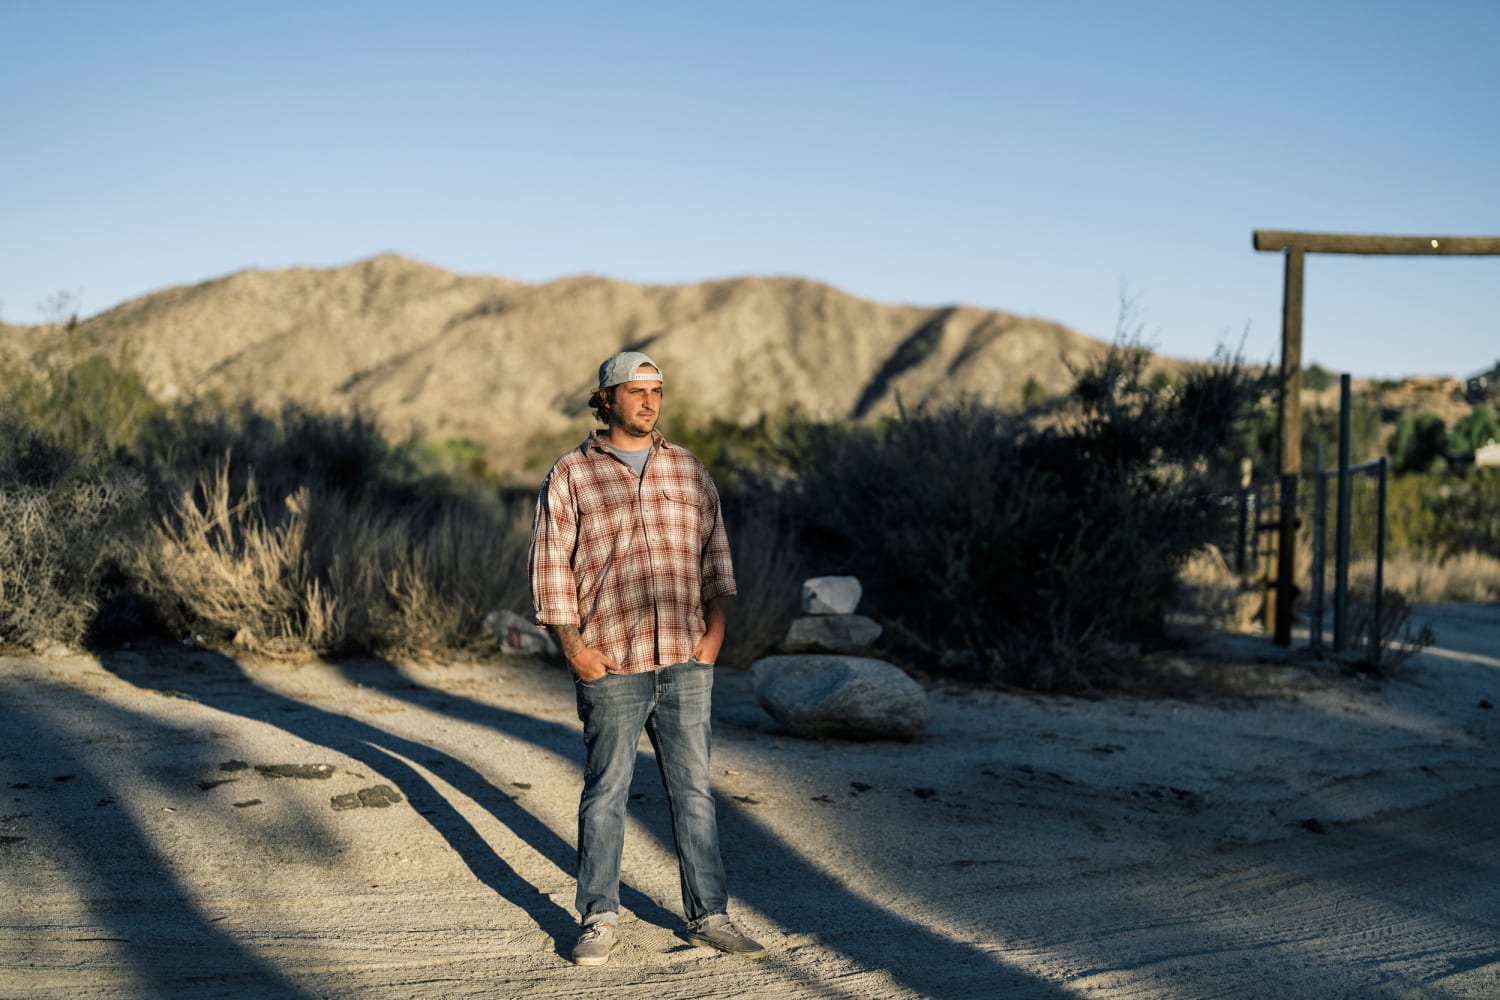 California urbanites flocking to remote deserts spark ‘culture clash’ with locals